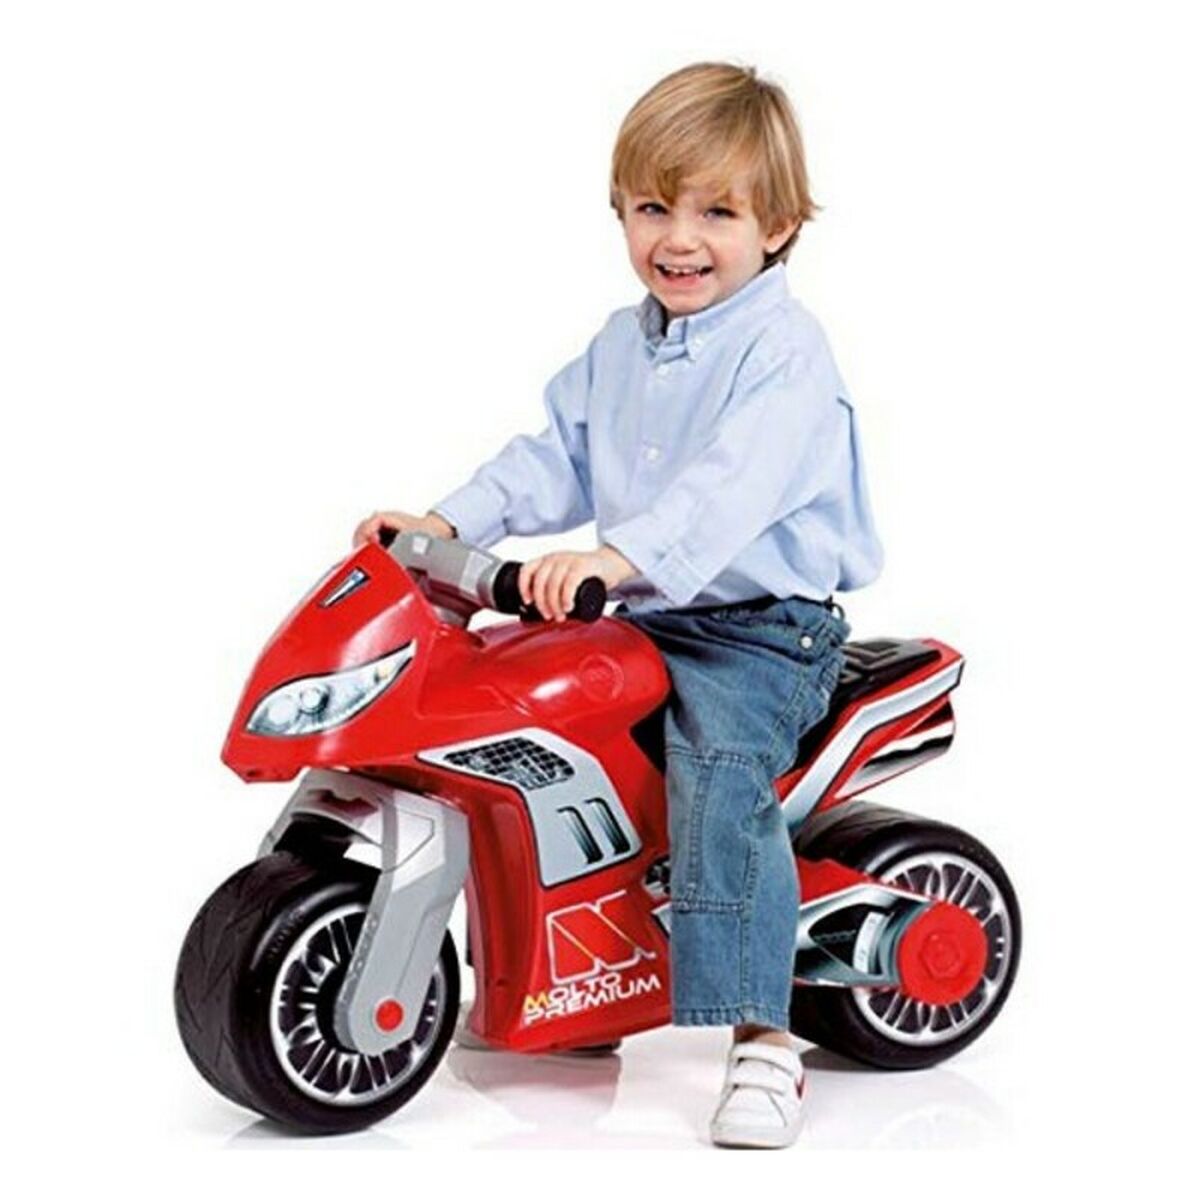 Trehjuling Moto Cross Premium Moltó Röd (18+ månader)-Leksaker och spel, Sport och utomhus-Moltó-peaceofhome.se